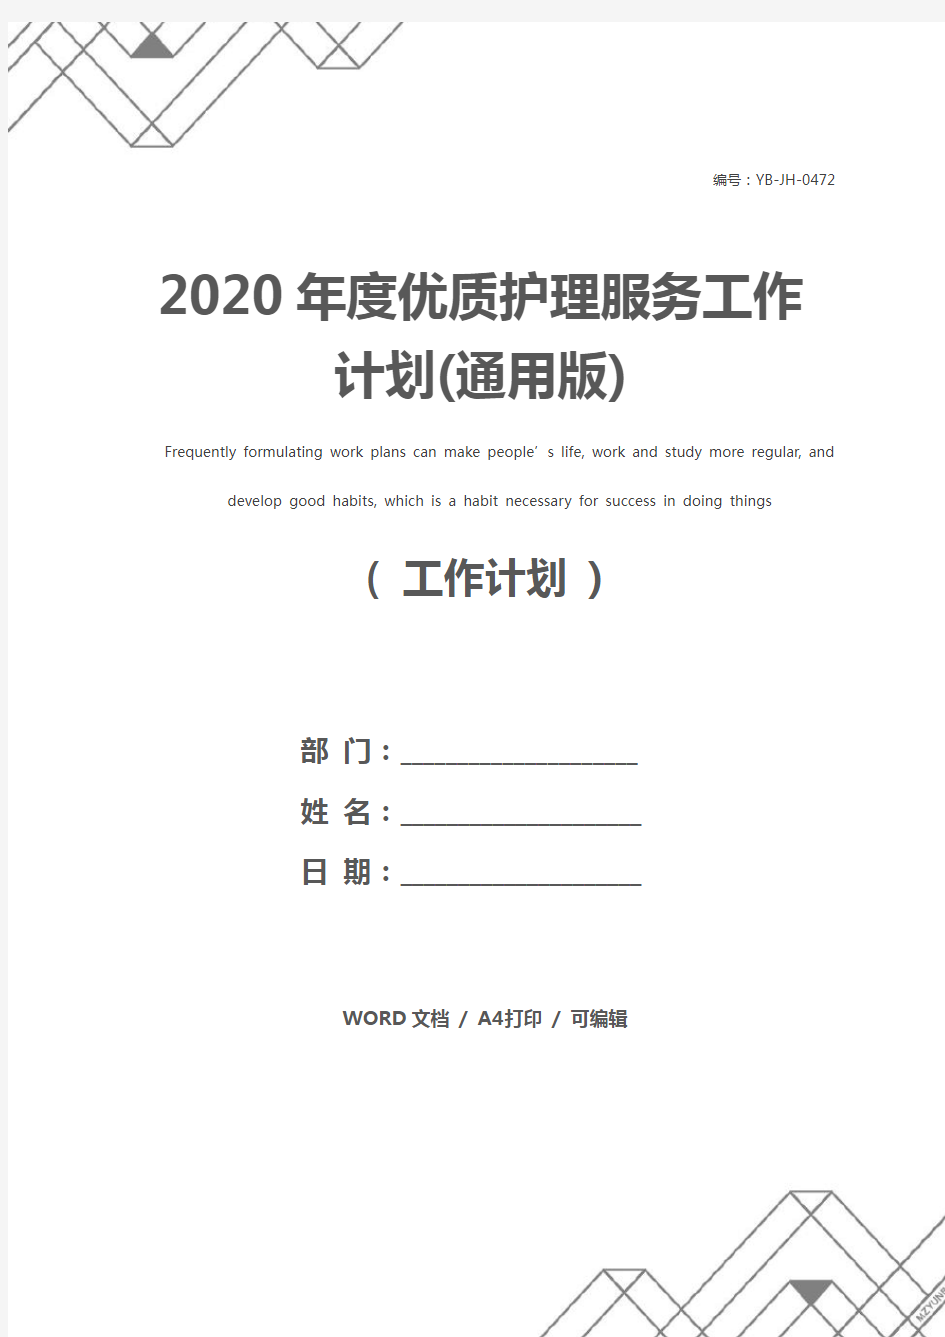 2020年度优质护理服务工作计划(通用版)